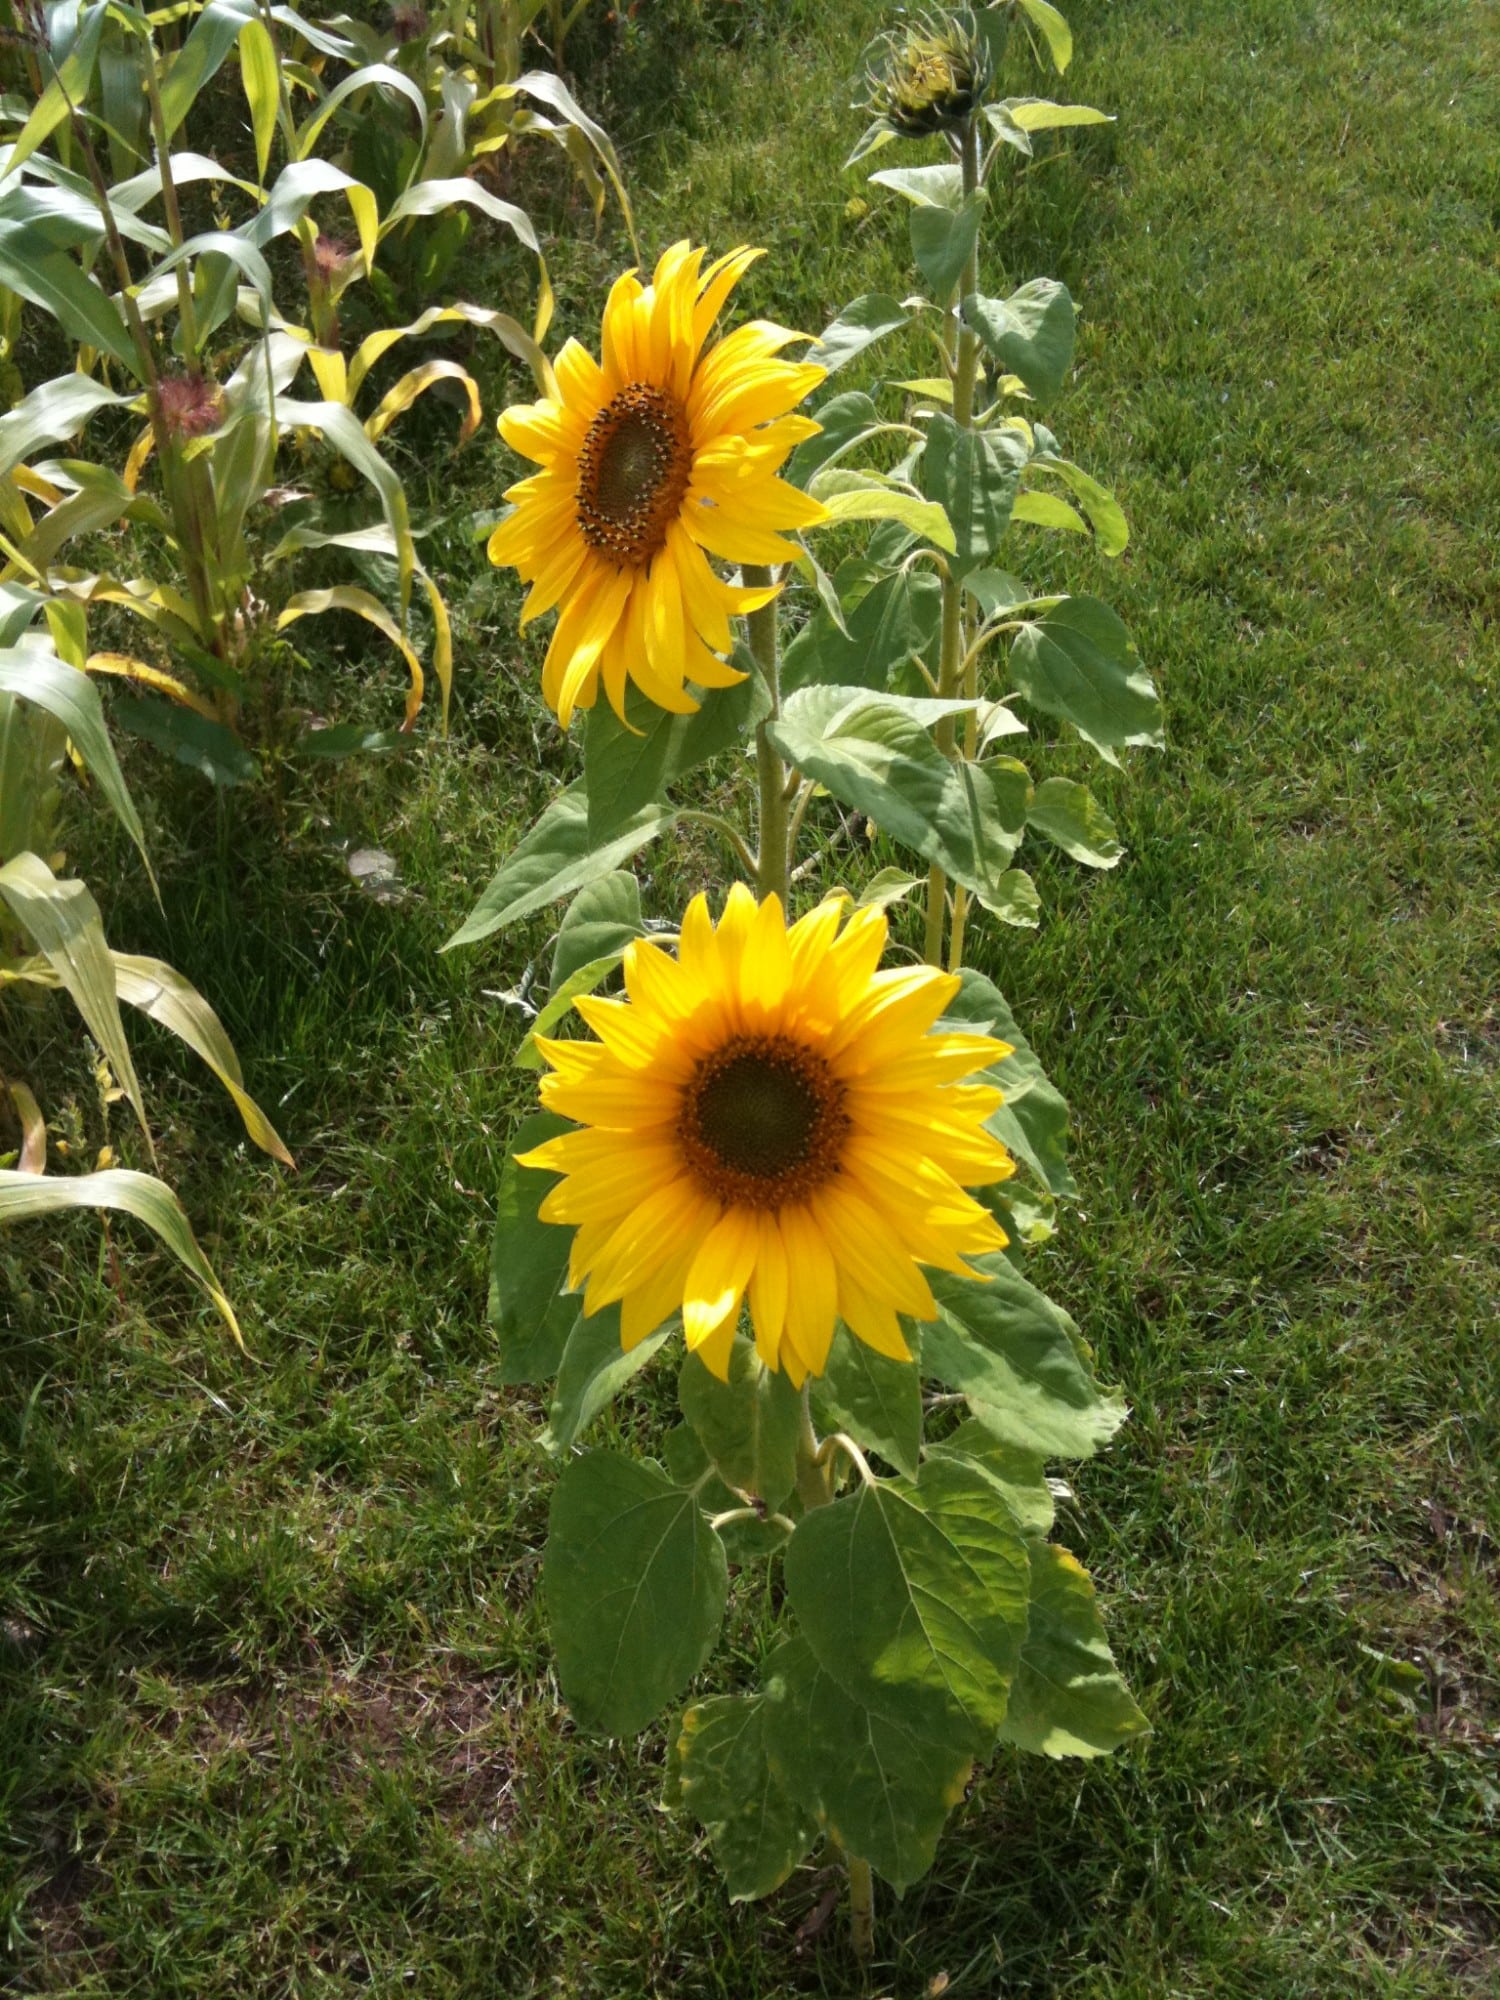 sunflowers photo